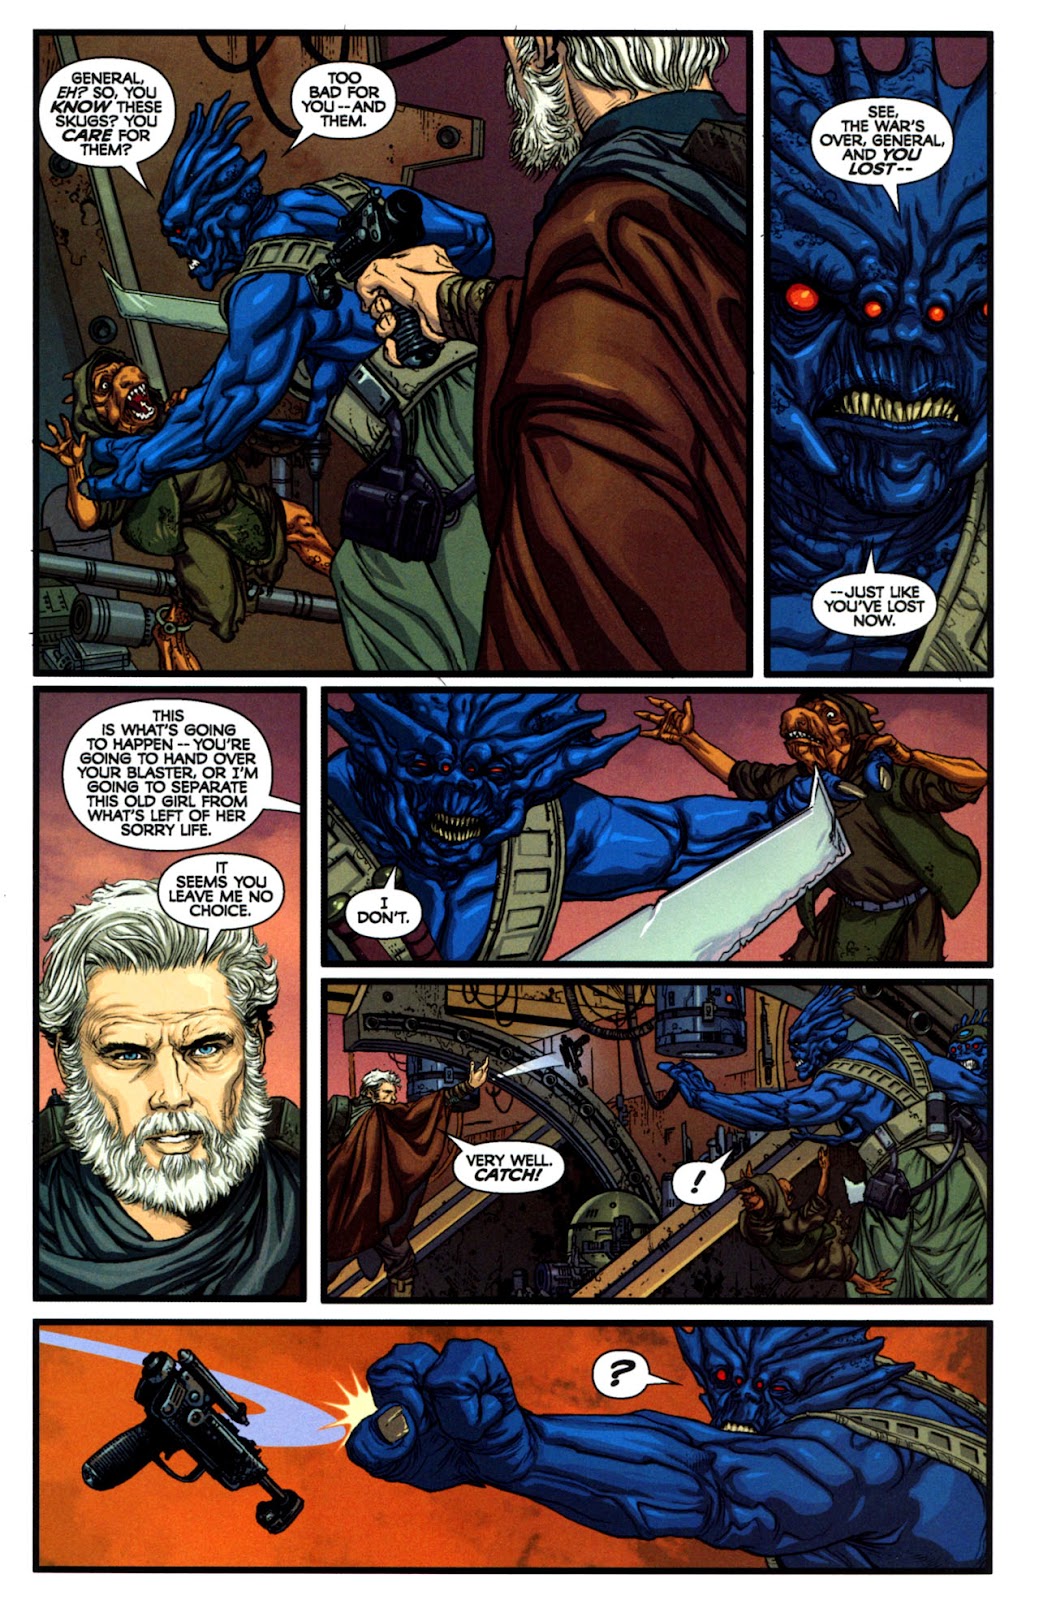 Star Wars: Dark Times issue 14 - Blue Harvest, Part 2 - Page 22